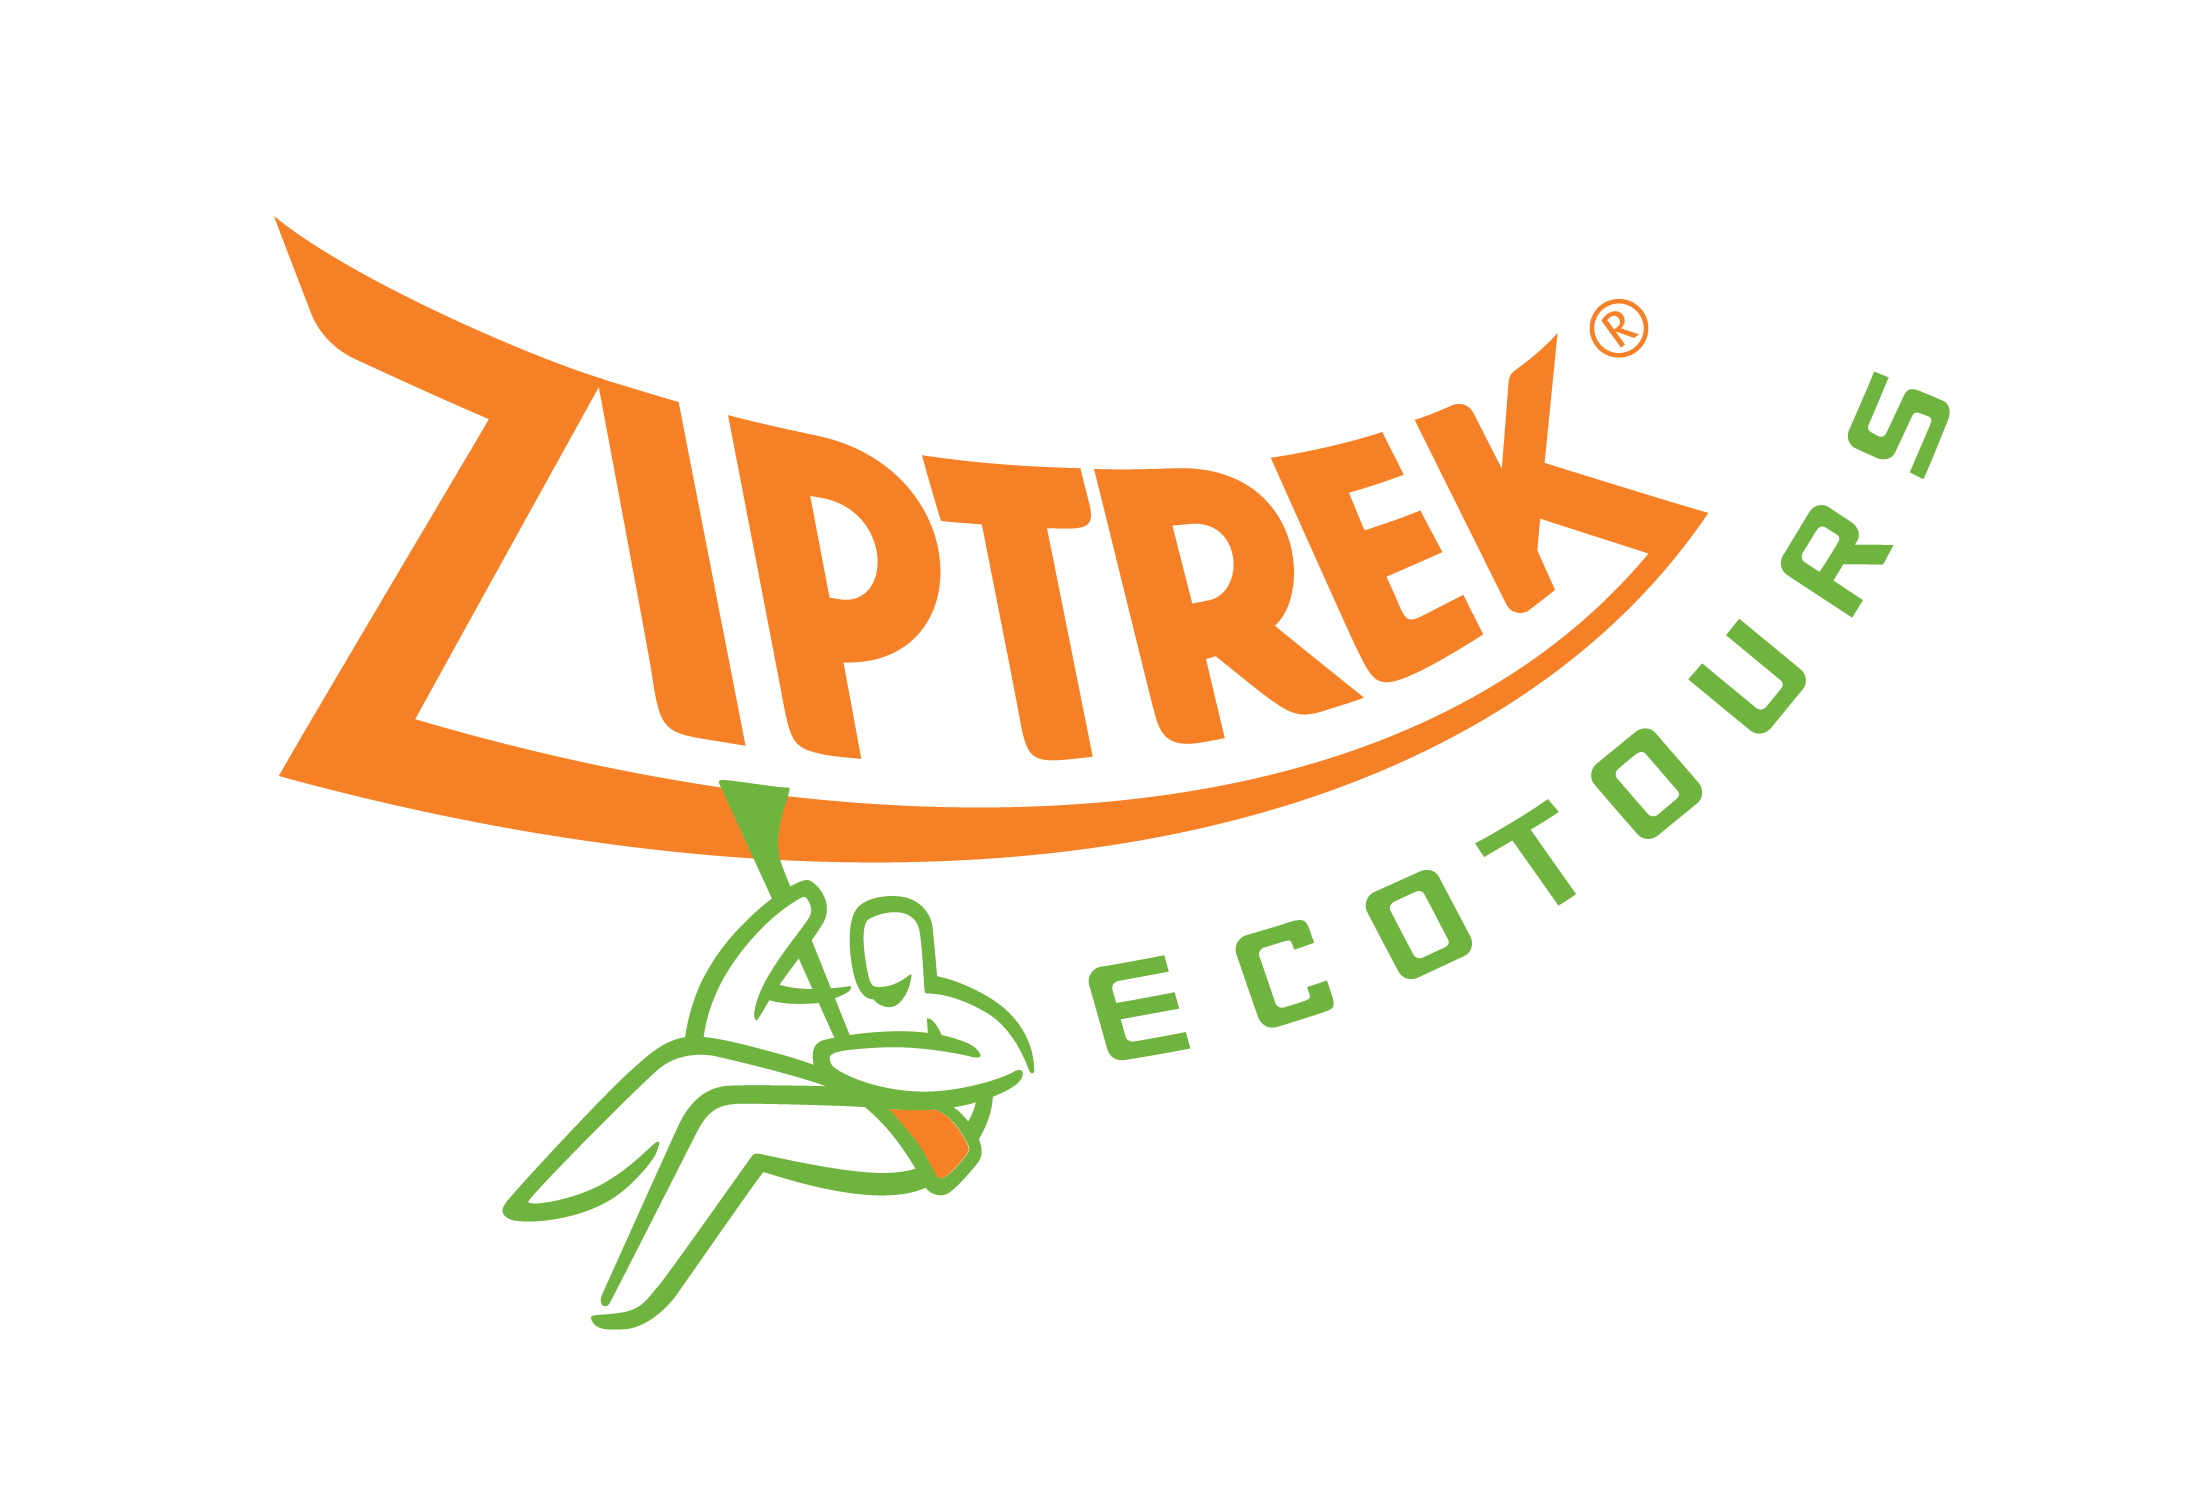 Ziptrek Ecotours (Queenstown)